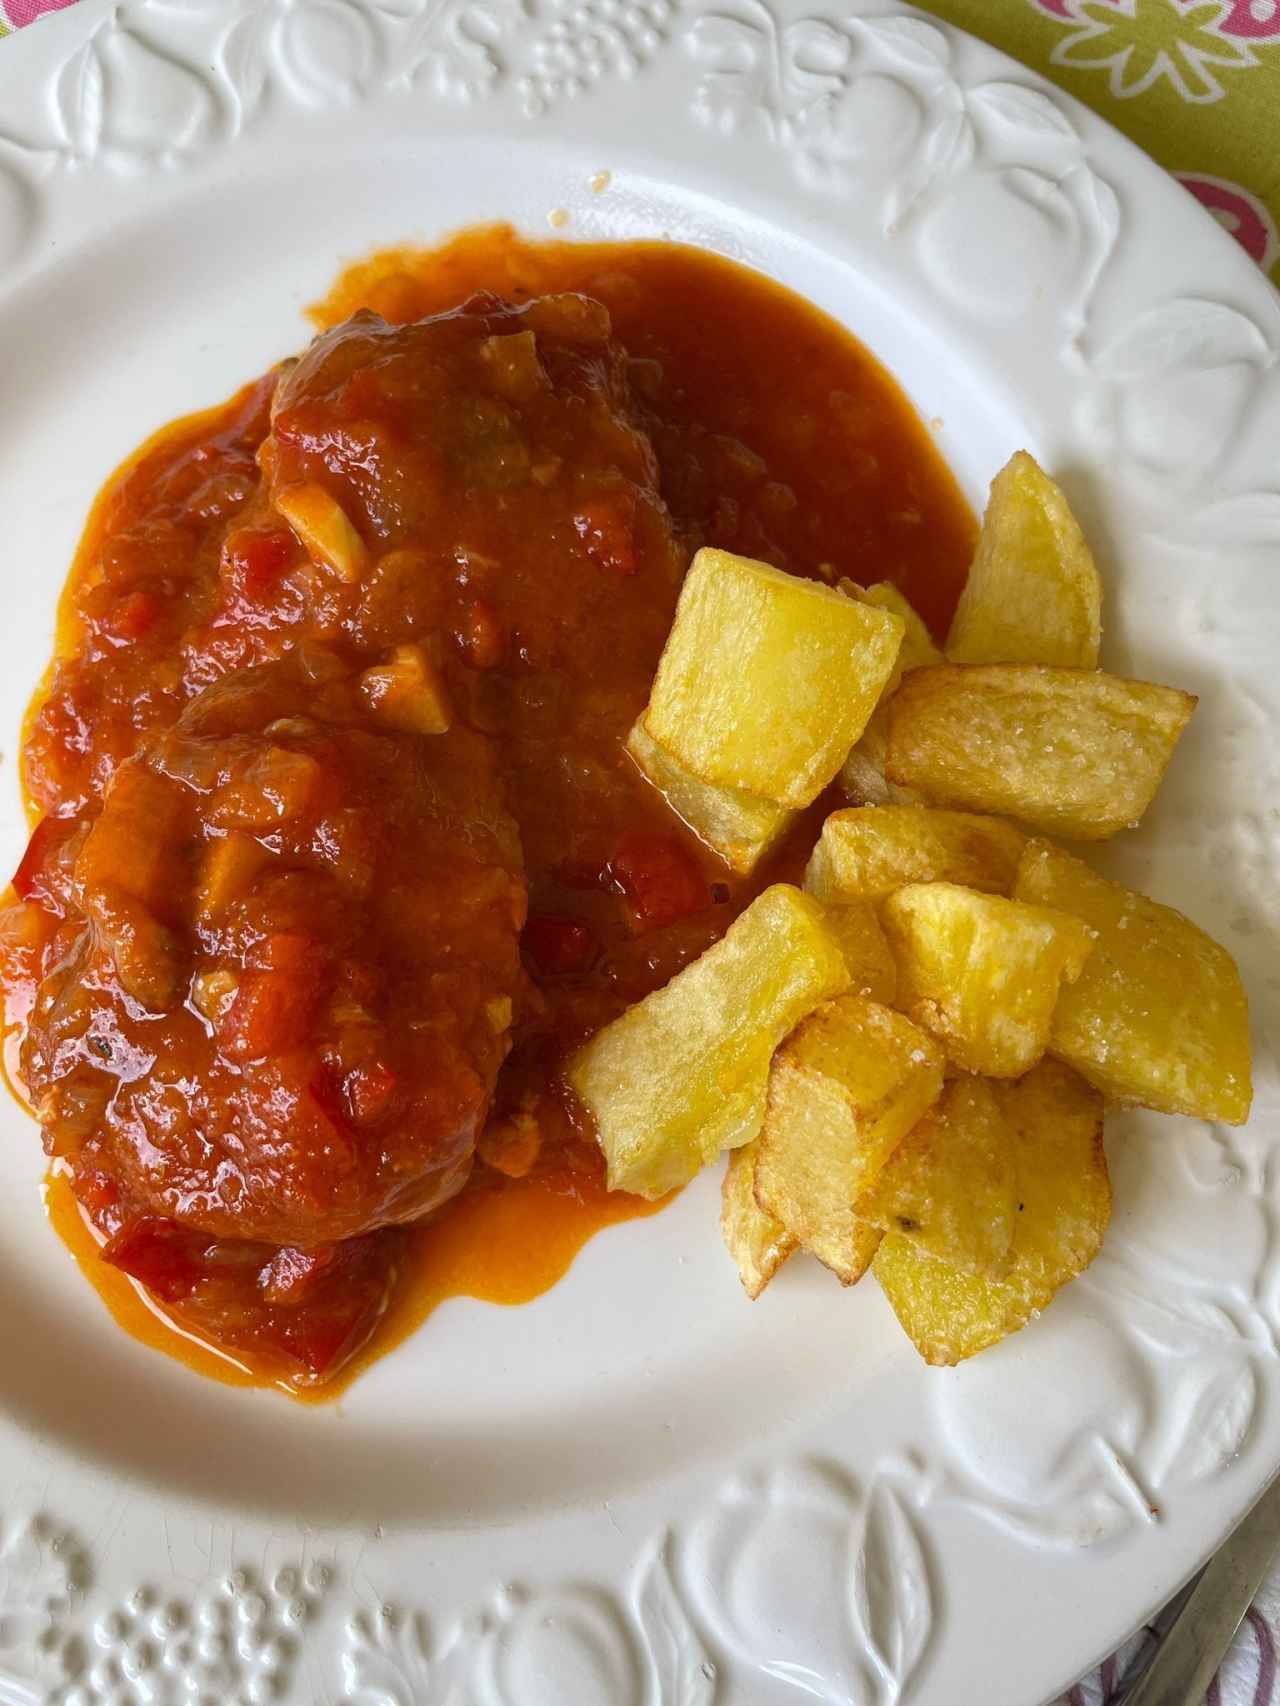 El bonito con tomate de María Jiménez.